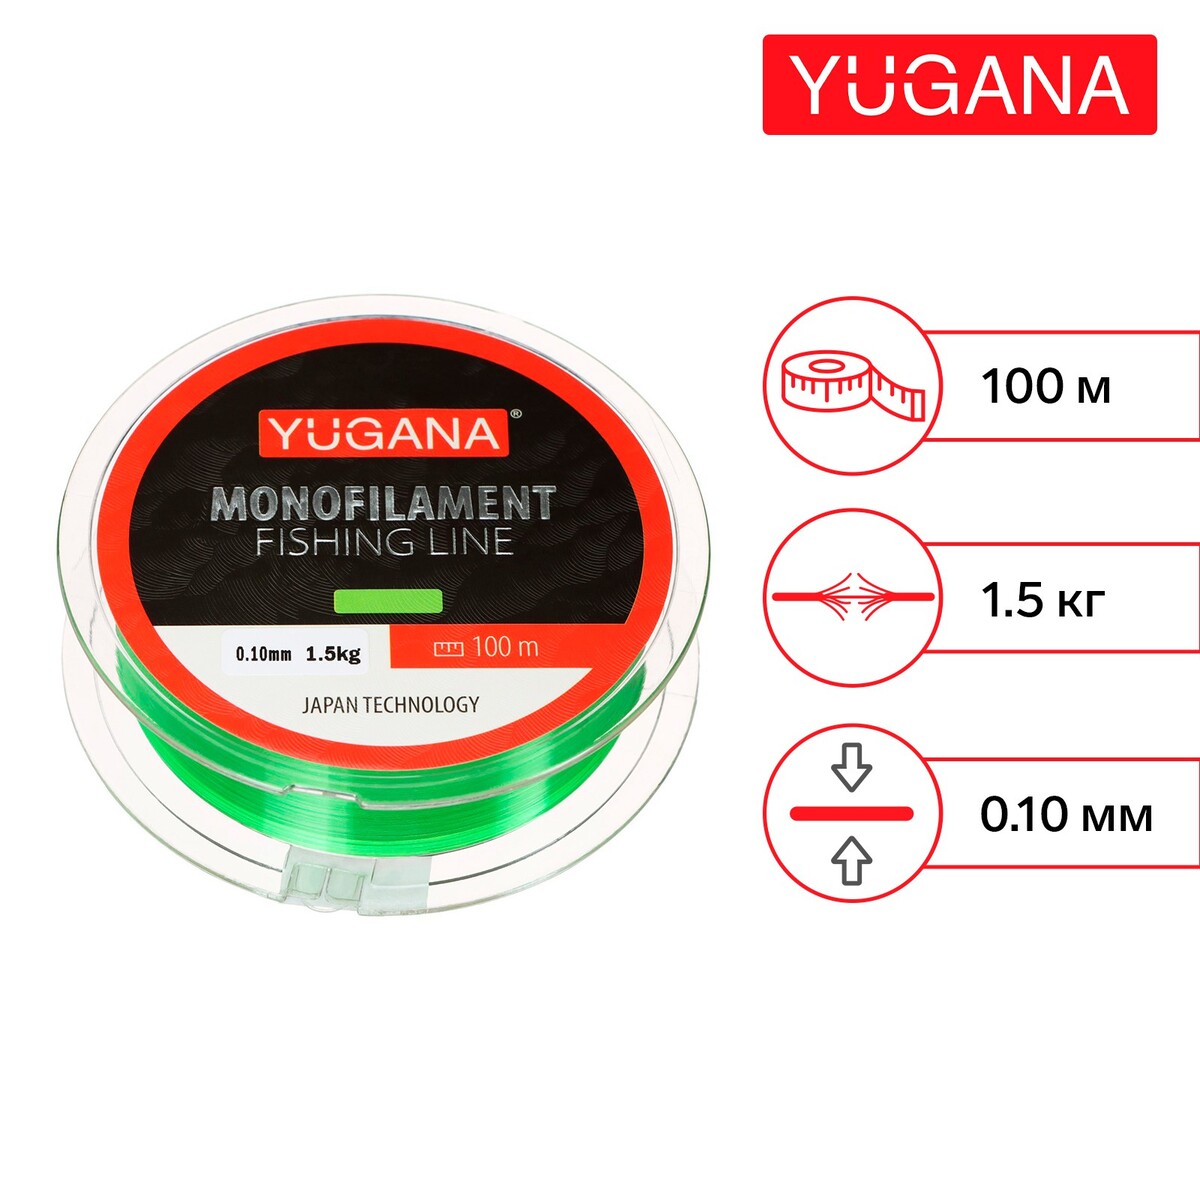 Леска монофильная yugana, диаметр 0.1 мм, тест 1.5 кг, 100 м, зеленая